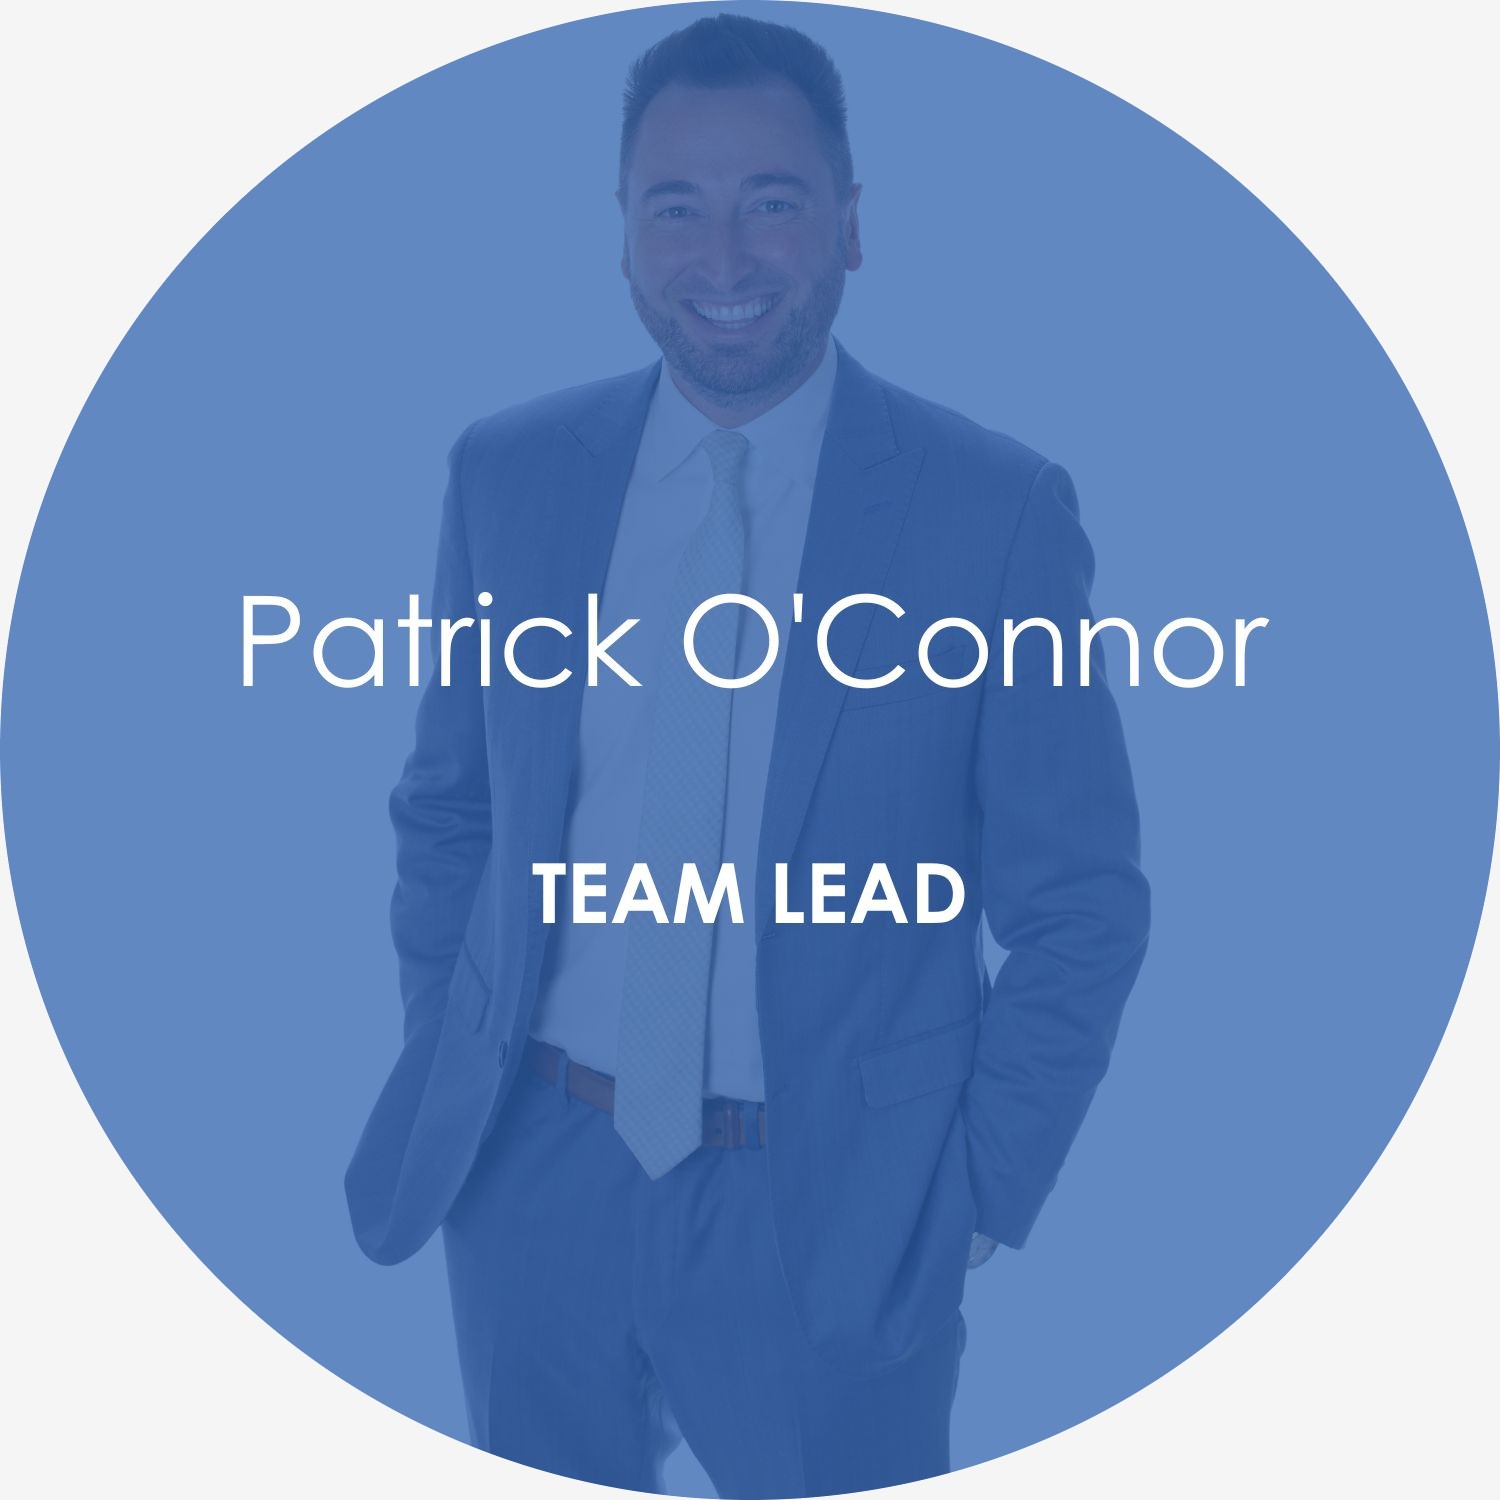 Patrick O’Connor – Team lead